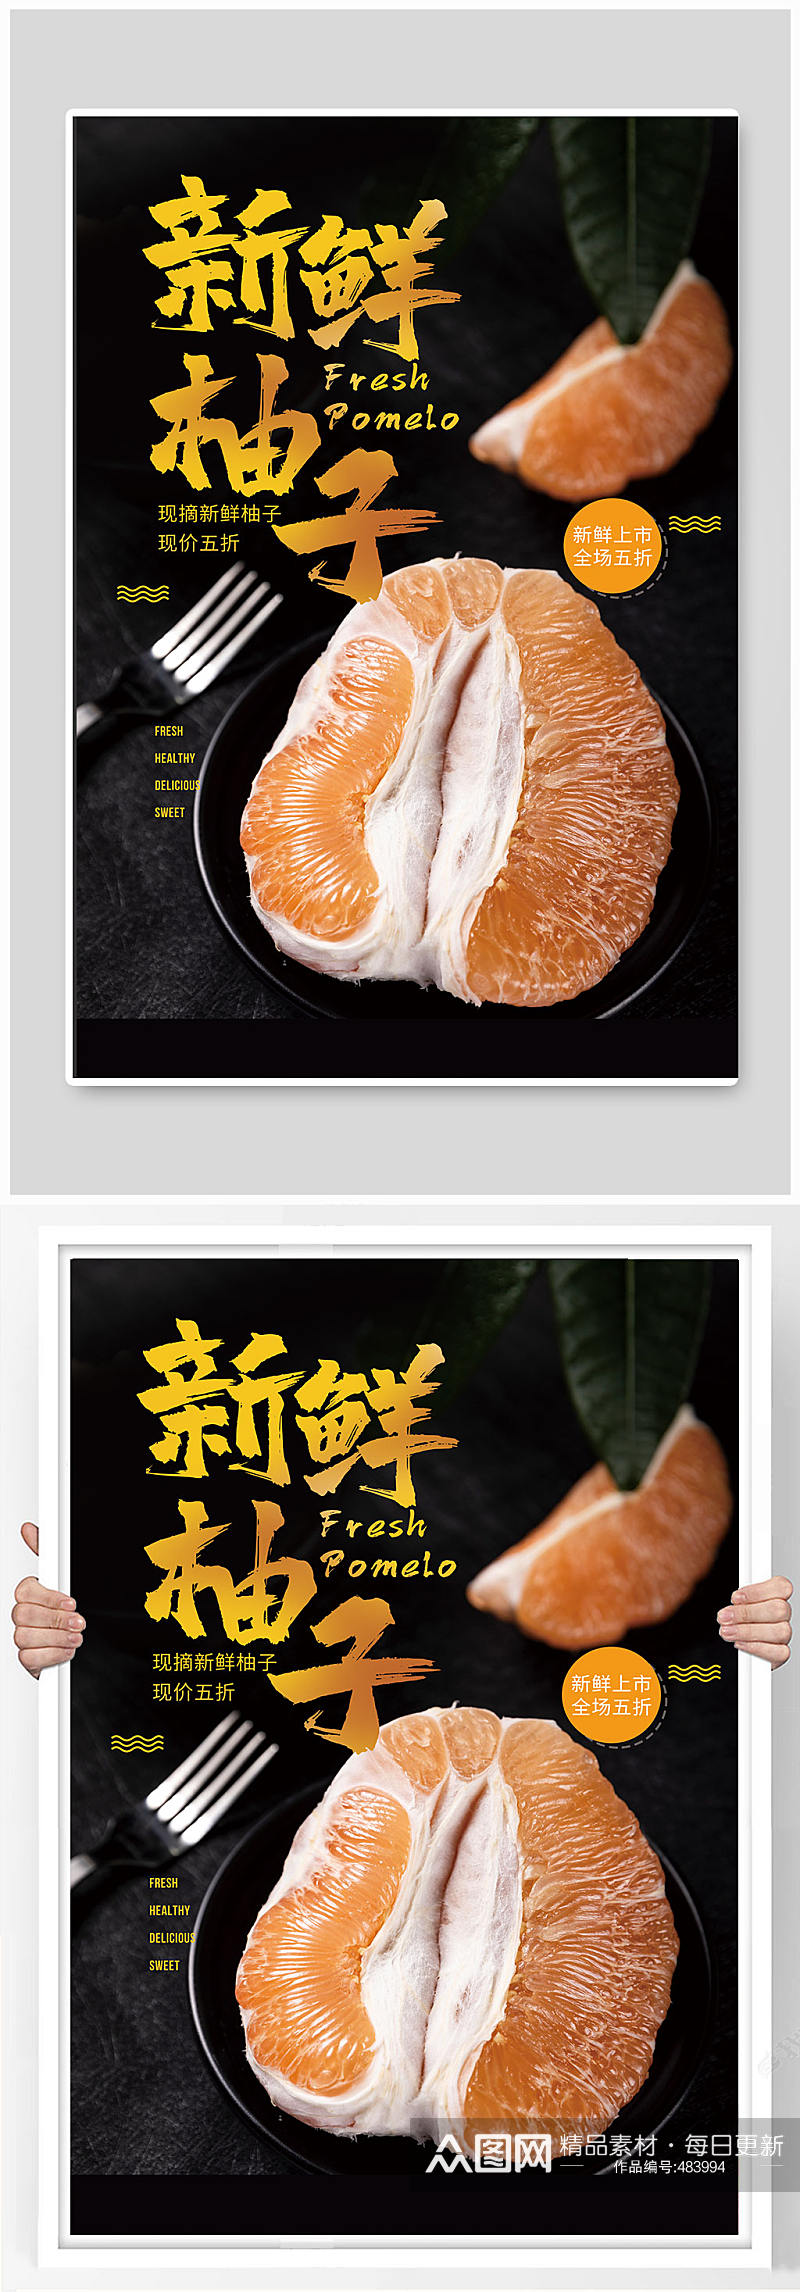 新鲜柚子水果促销海报素材